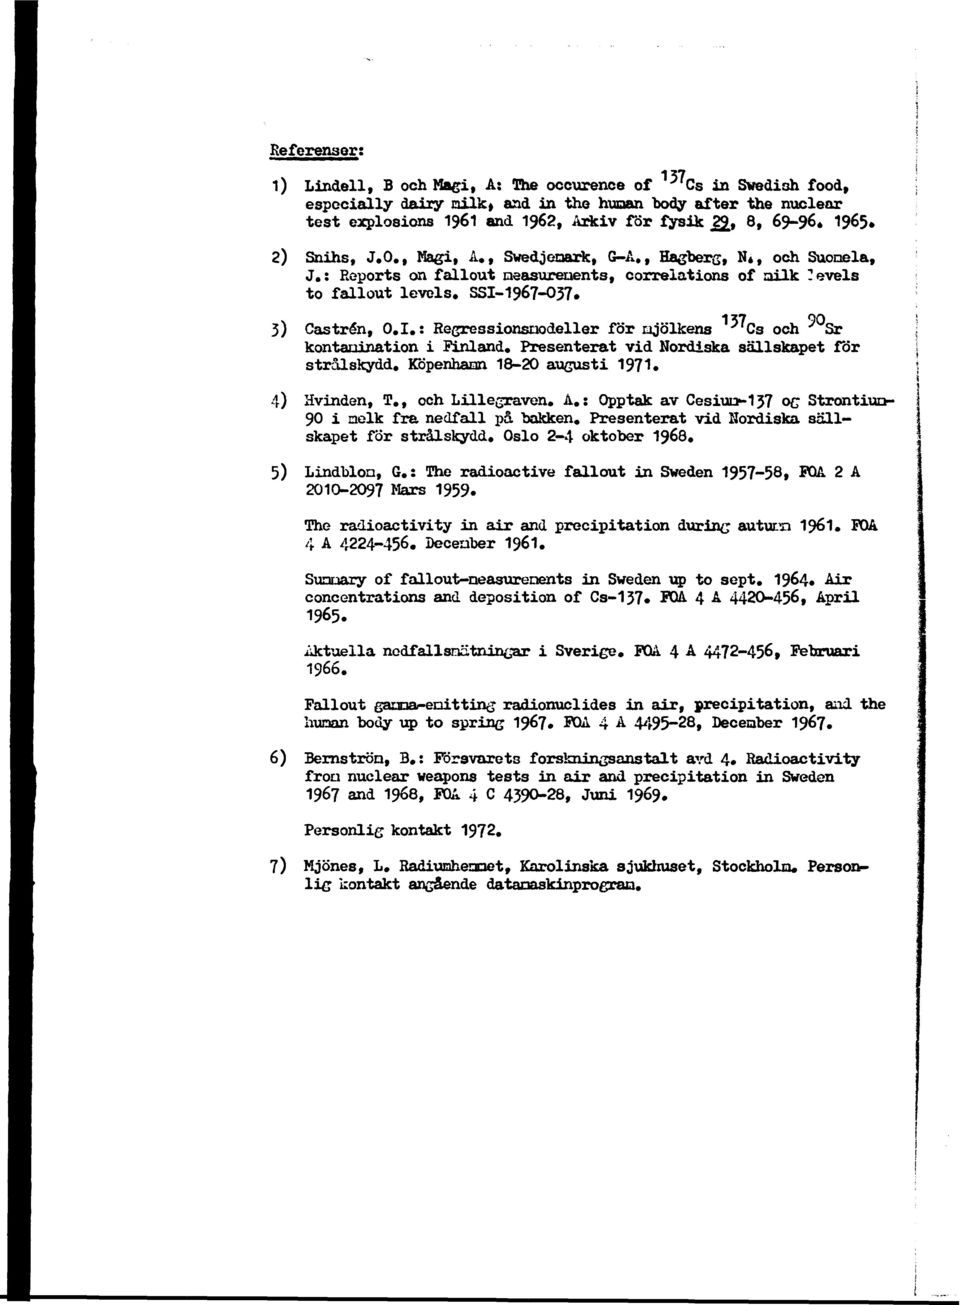 I,: Regressionsnodeller för mjölkens ^ Cs och ' Sr kontaoination i Finland. Presenterat vid Nordiska sällskapet för strålskydd. Köpenhamn 18-20 augusti 1971. 4) Hvinden, T., och Lillegraven. A.